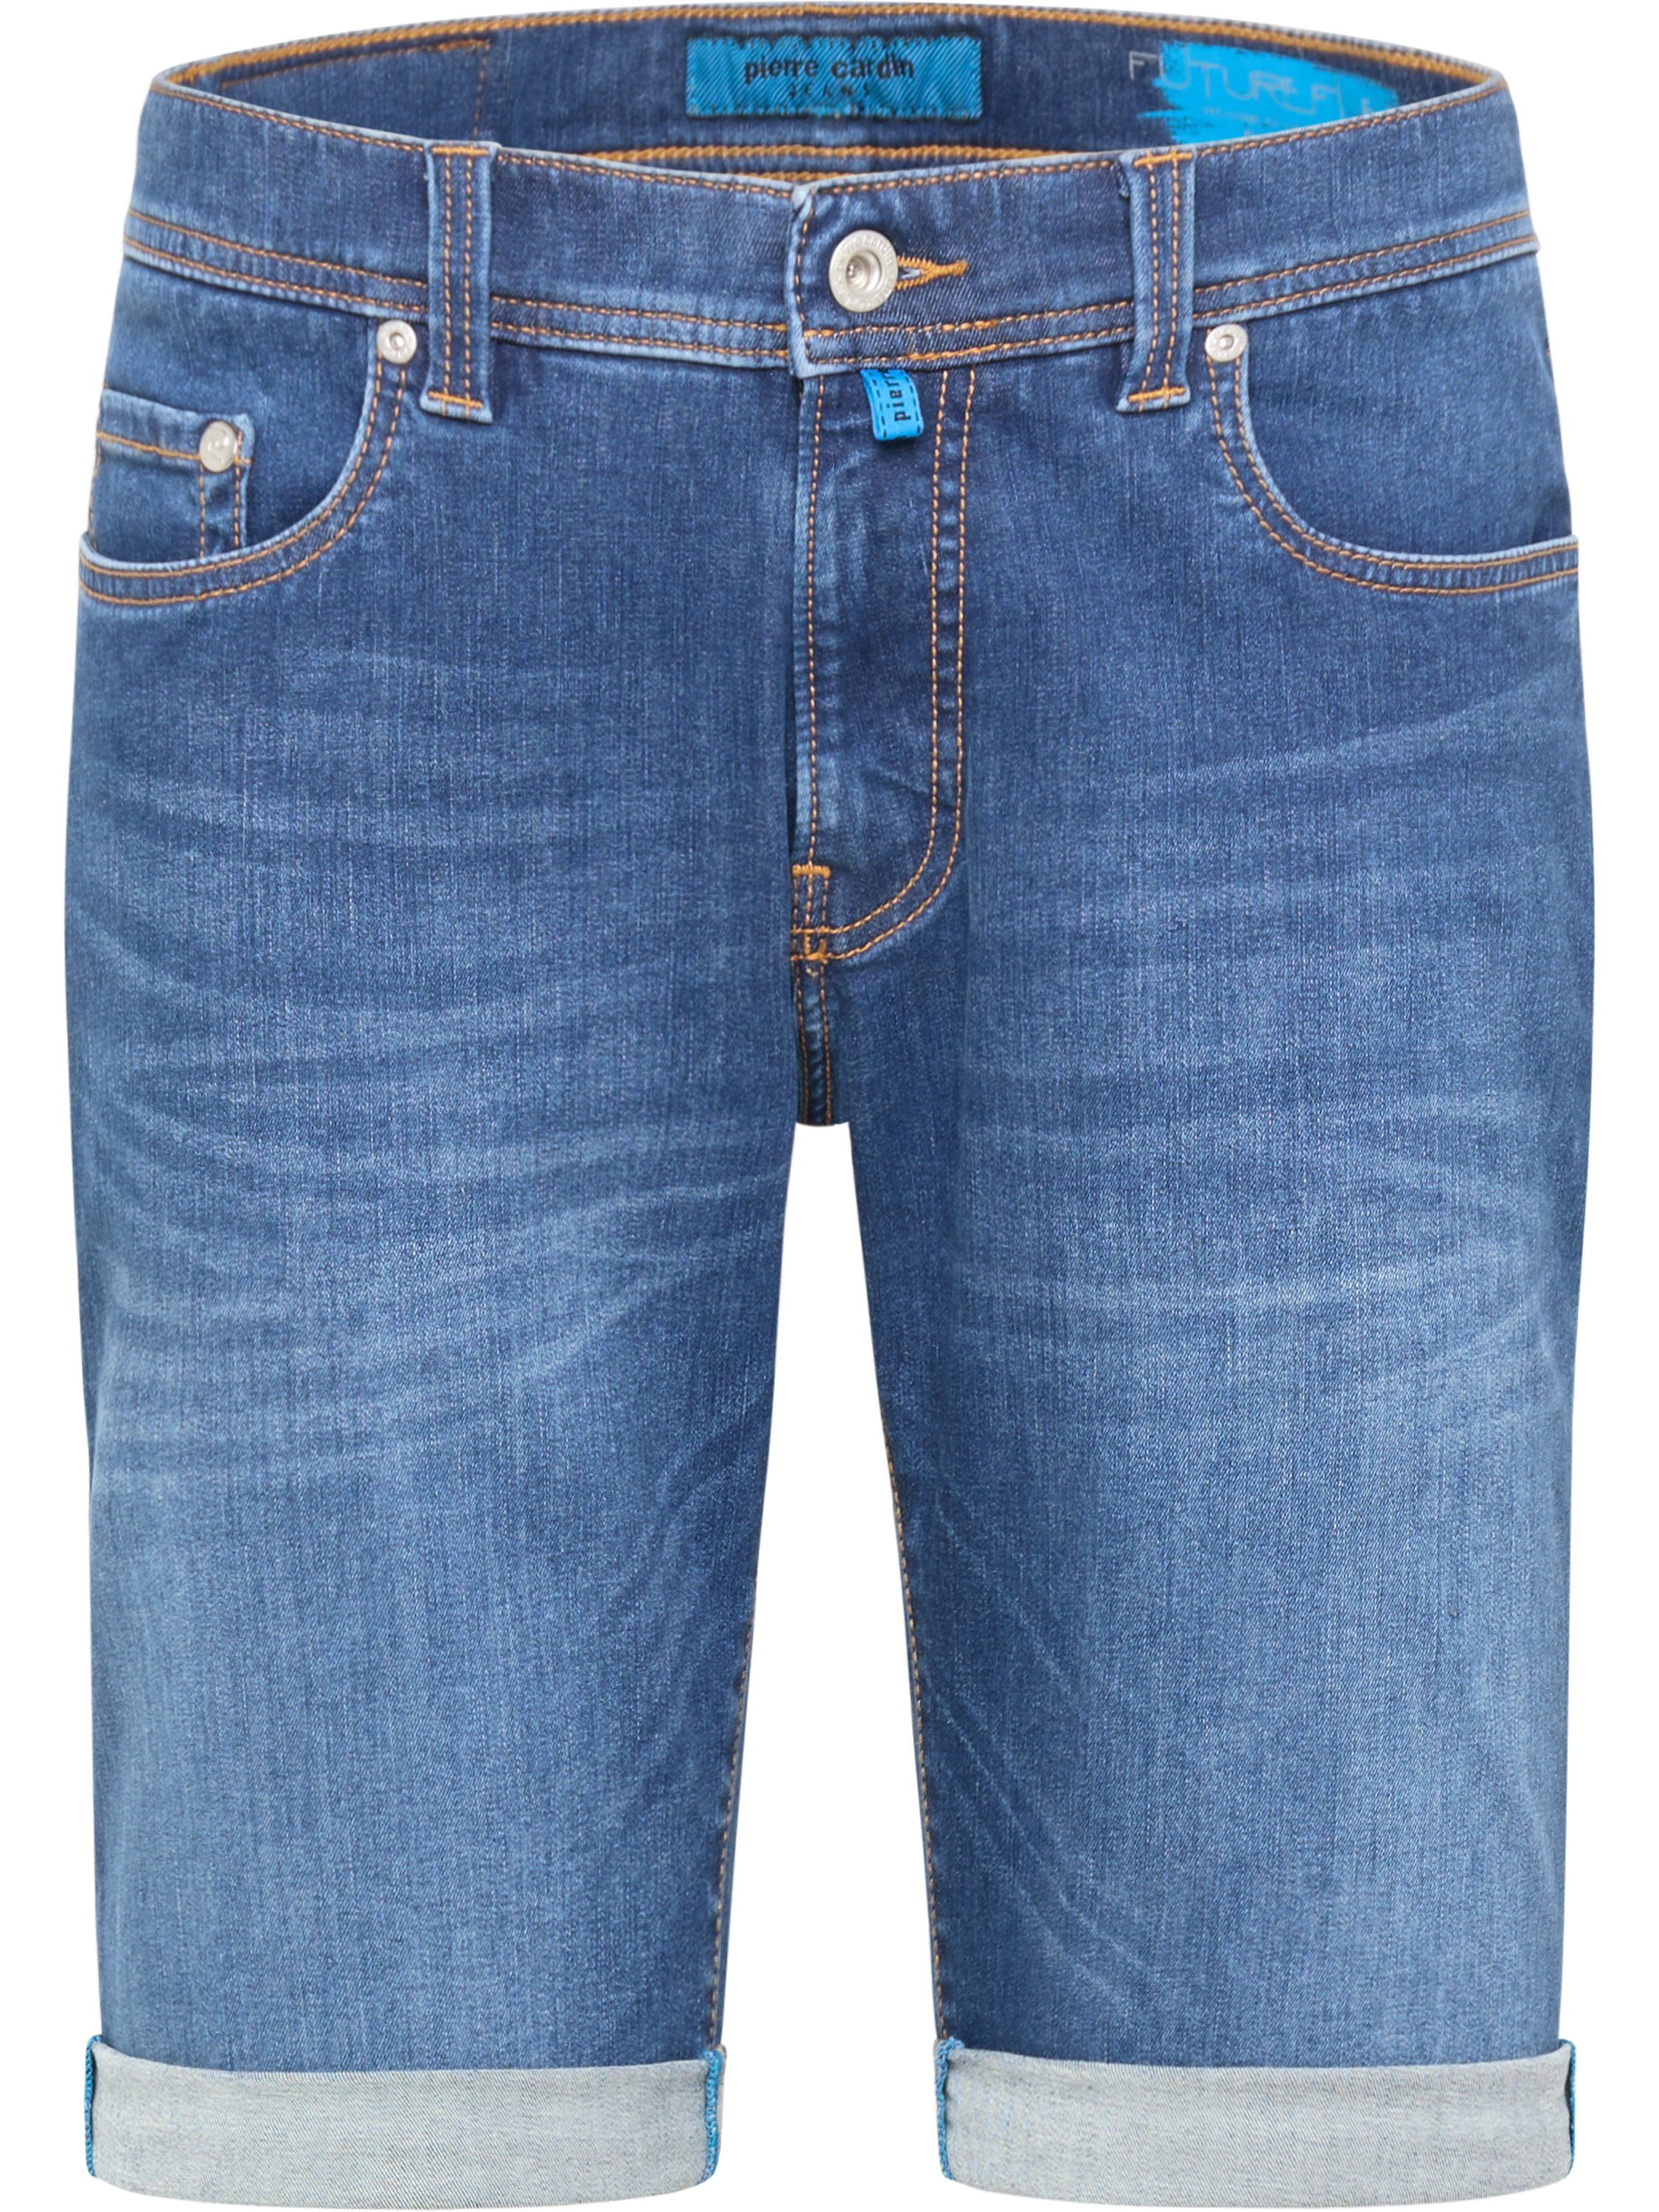 Pierre Cardin 5-Pocket-Jeans PIERRE CARDIN LYON FUTUREFLEX SHORTS blue denim 3852 8860.05 - Konfekt